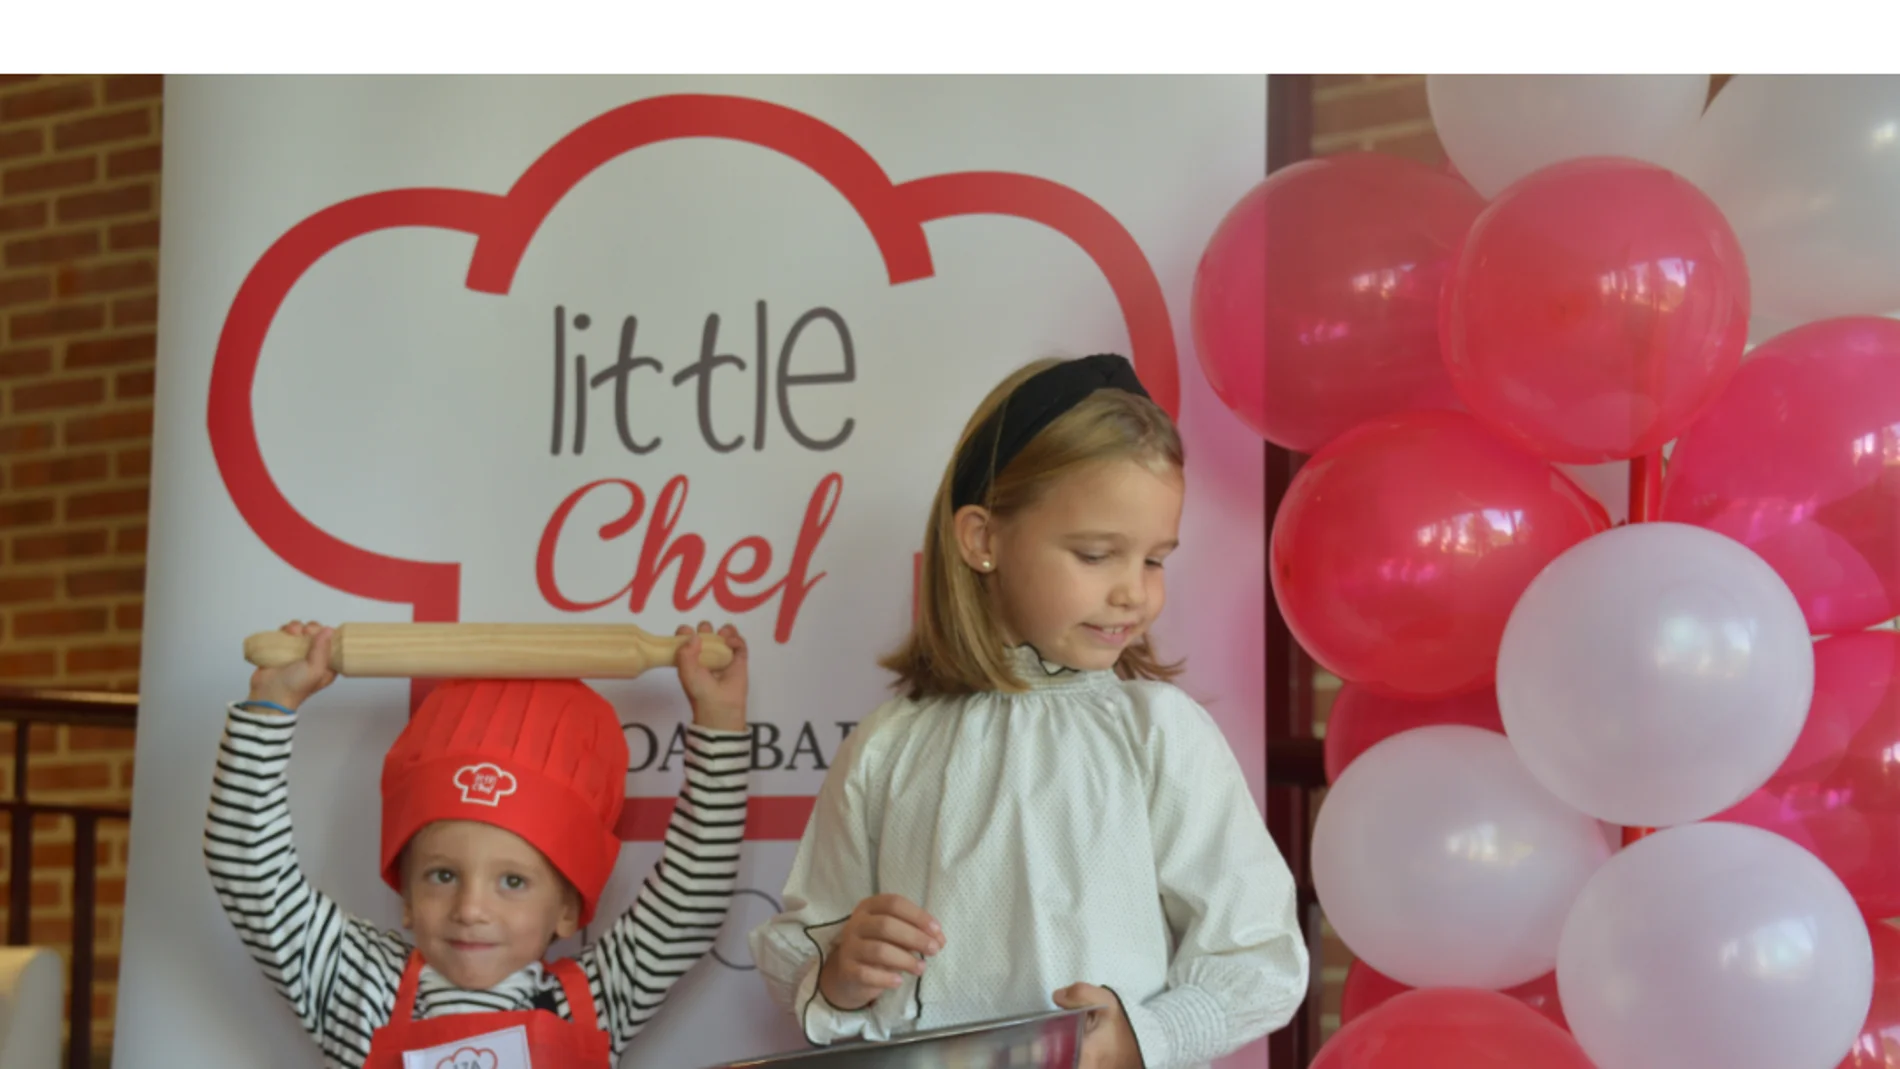 Concurso "Little Chef Pinoalbar"